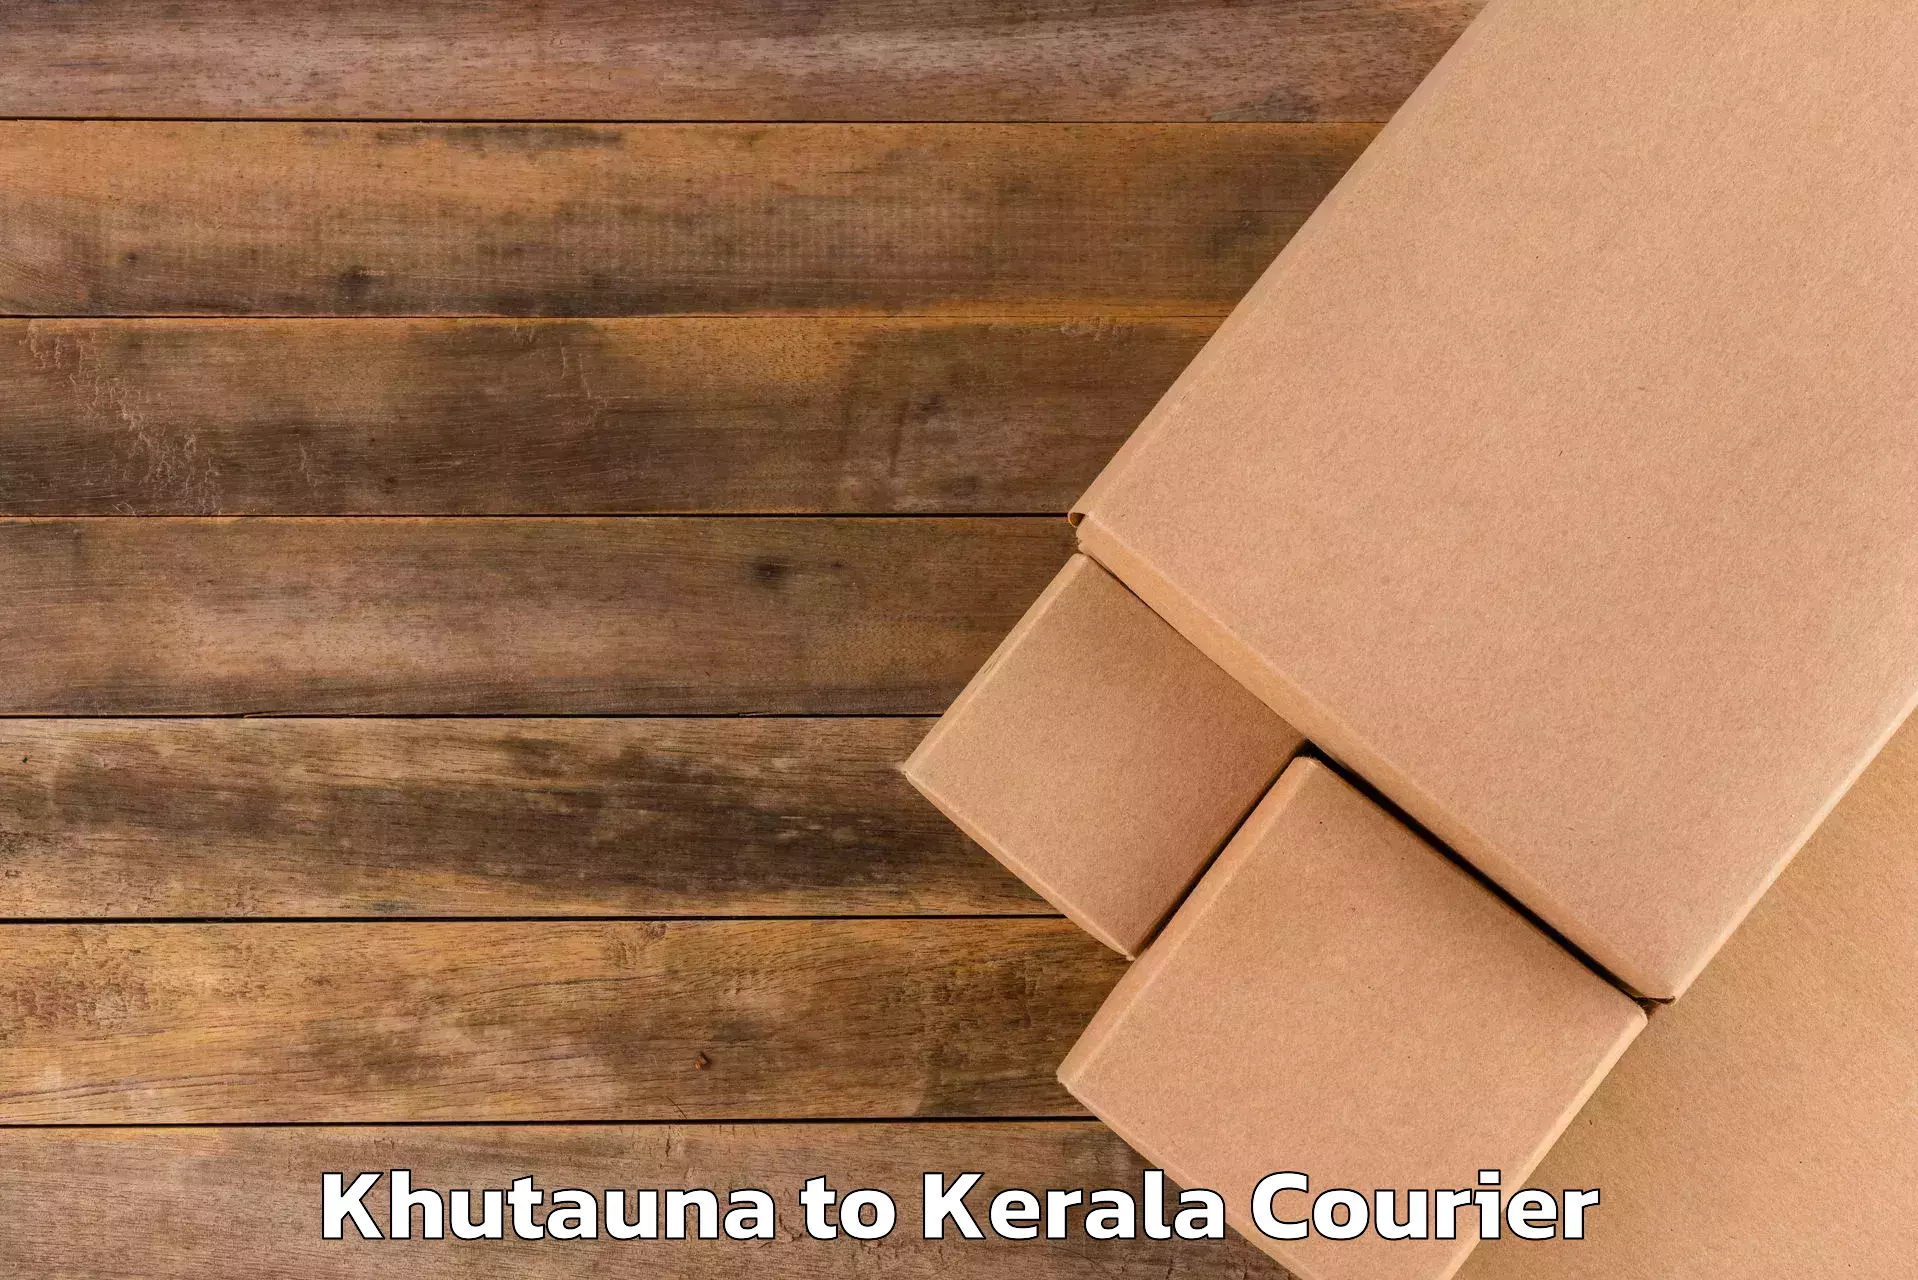 Luggage delivery optimization Khutauna to Pathanamthitta